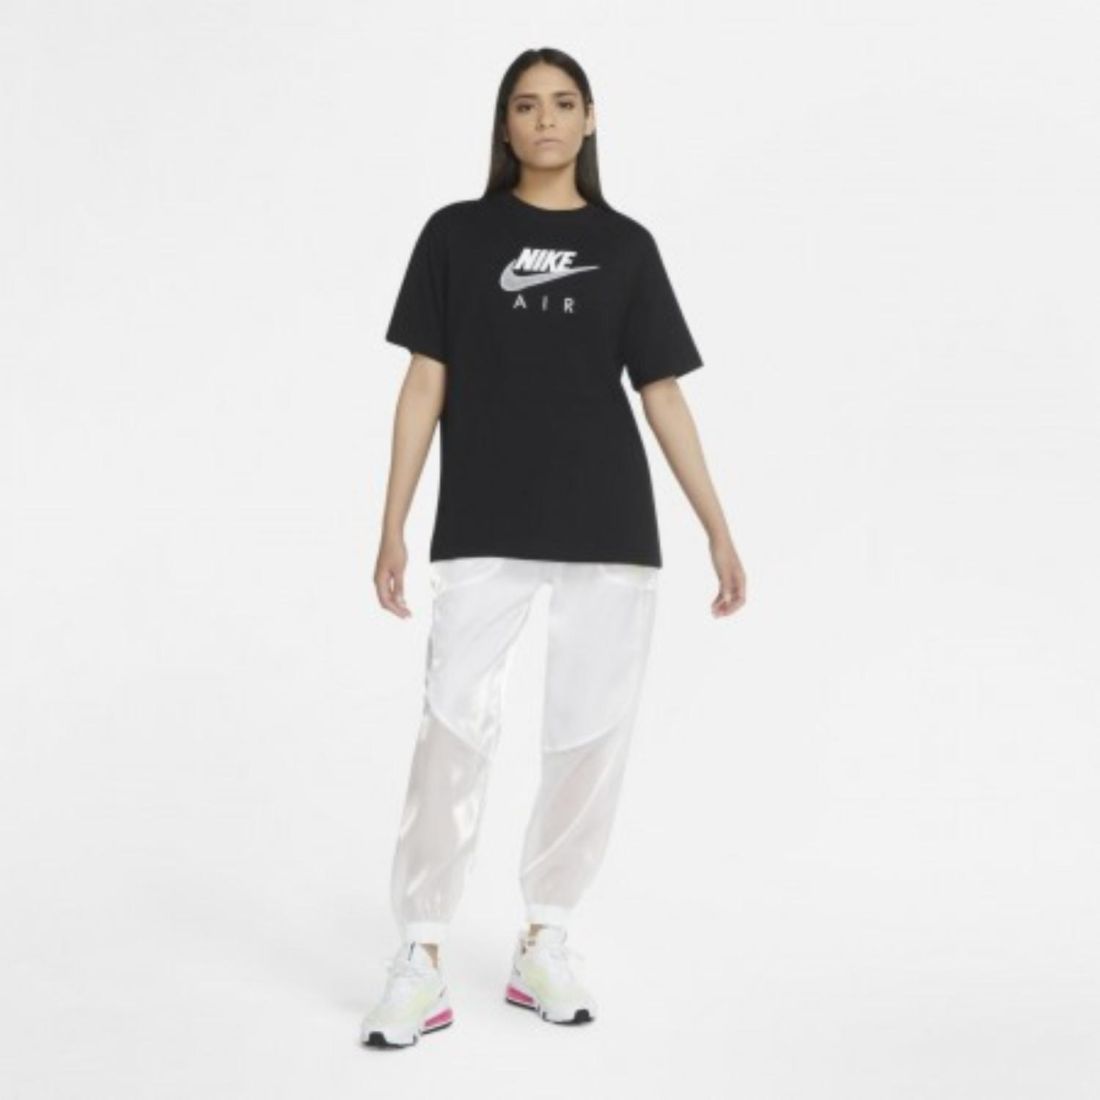 Стильная женская футболка Nike Air